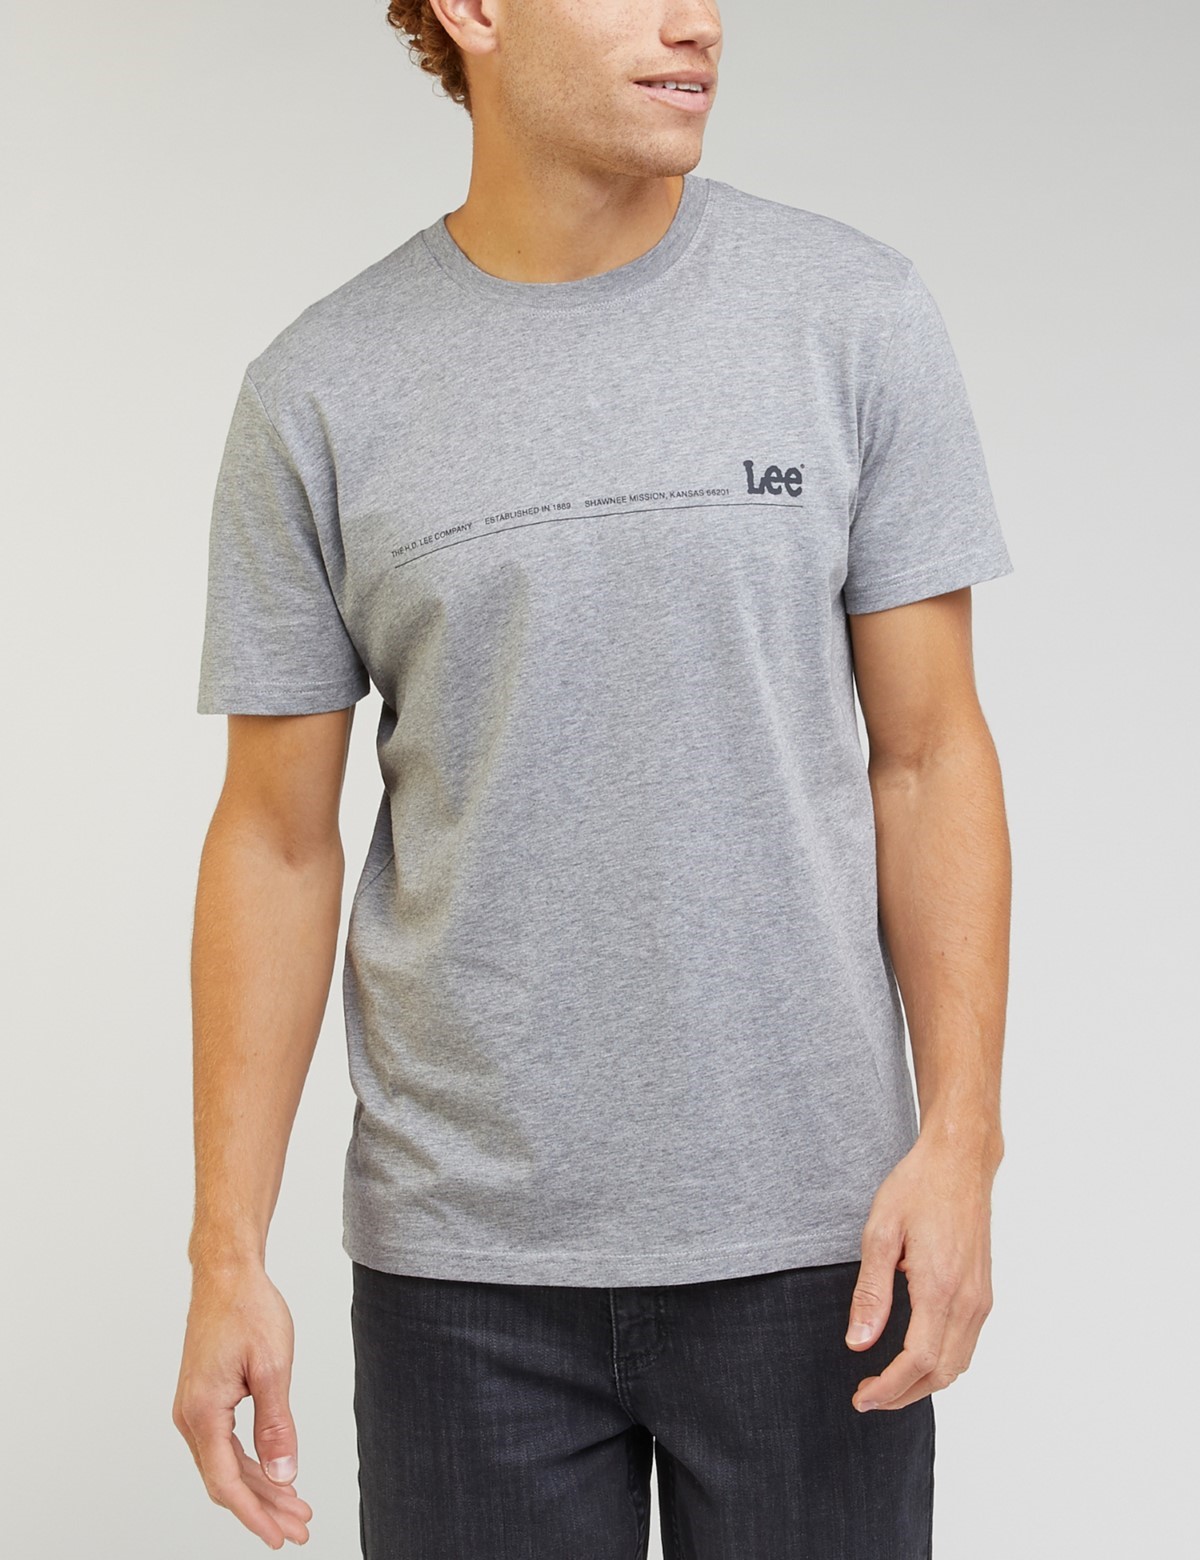 ΑΝΔΡΑΣ > ΑΝΔΡΙΚΑ ΡΟΥΧΑ > ΜΠΛΟΥΖΕΣ > T-Shirt Lee Small Logo Tee ανδρικό γκρι μπλουζάκι LL03FQ03